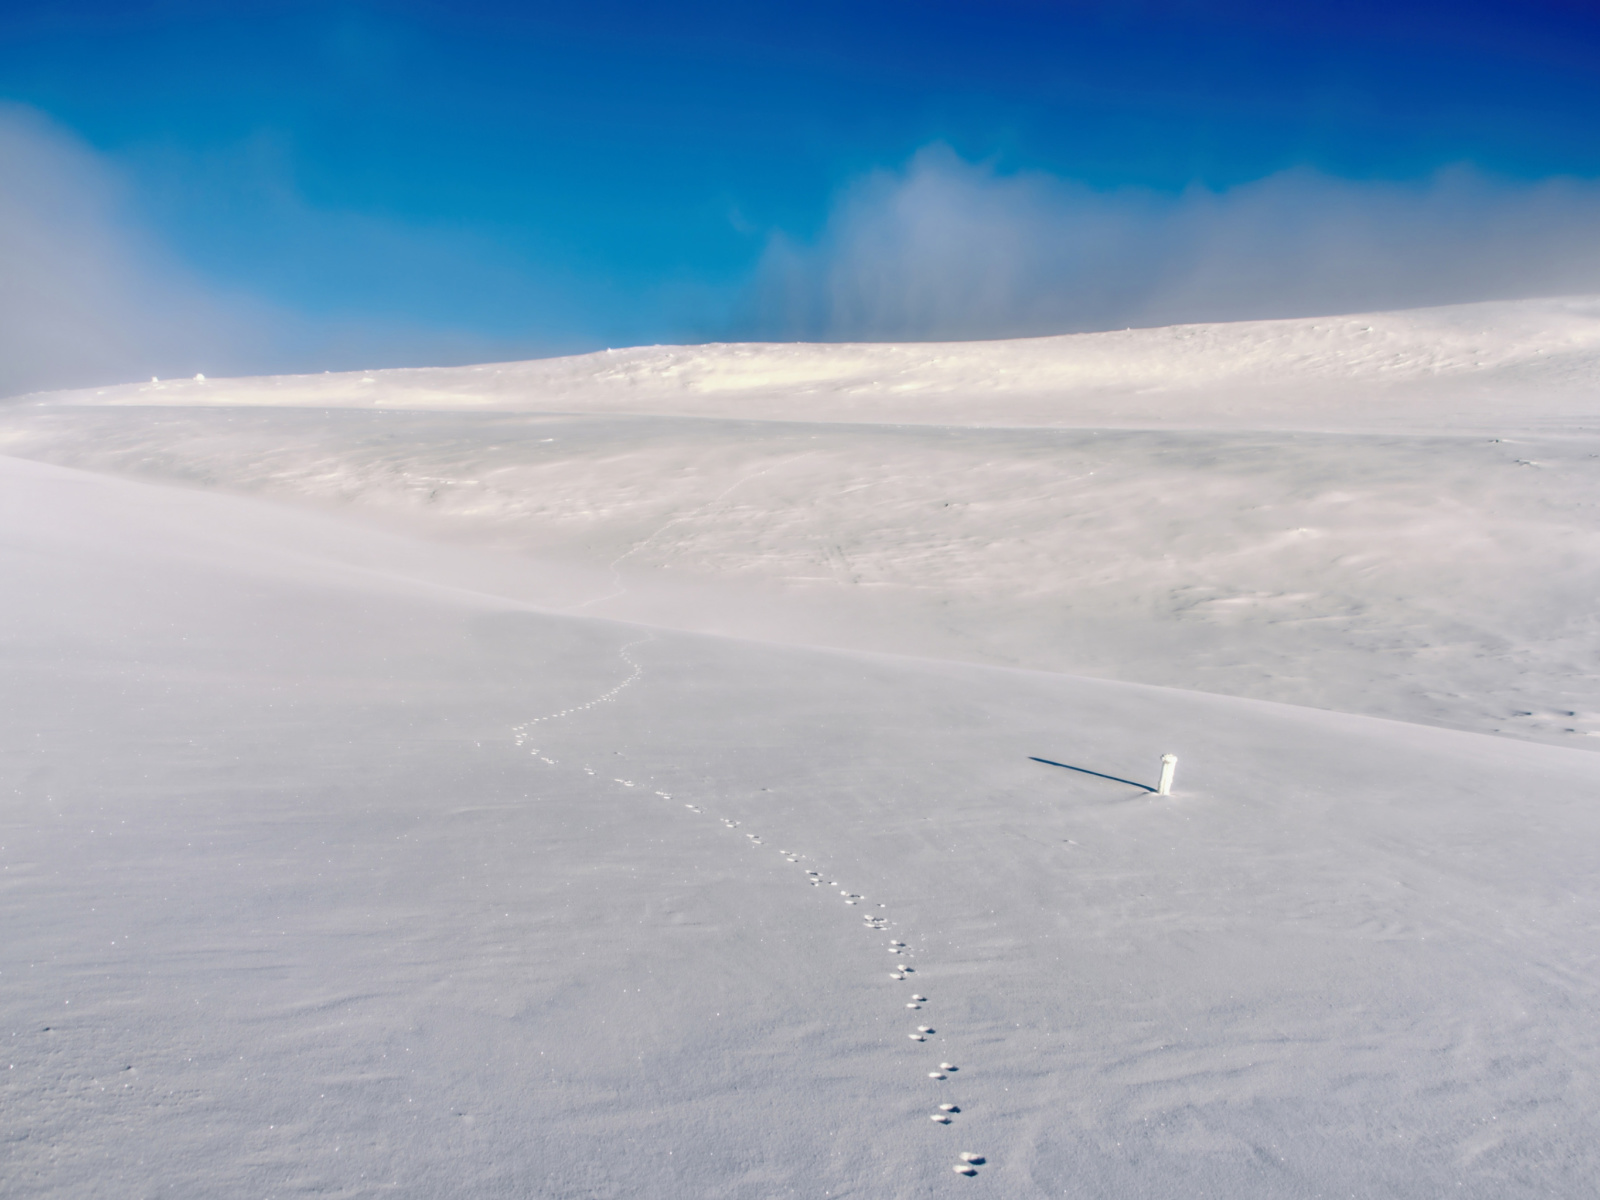 Footprints on snow field screenshot #1 1600x1200